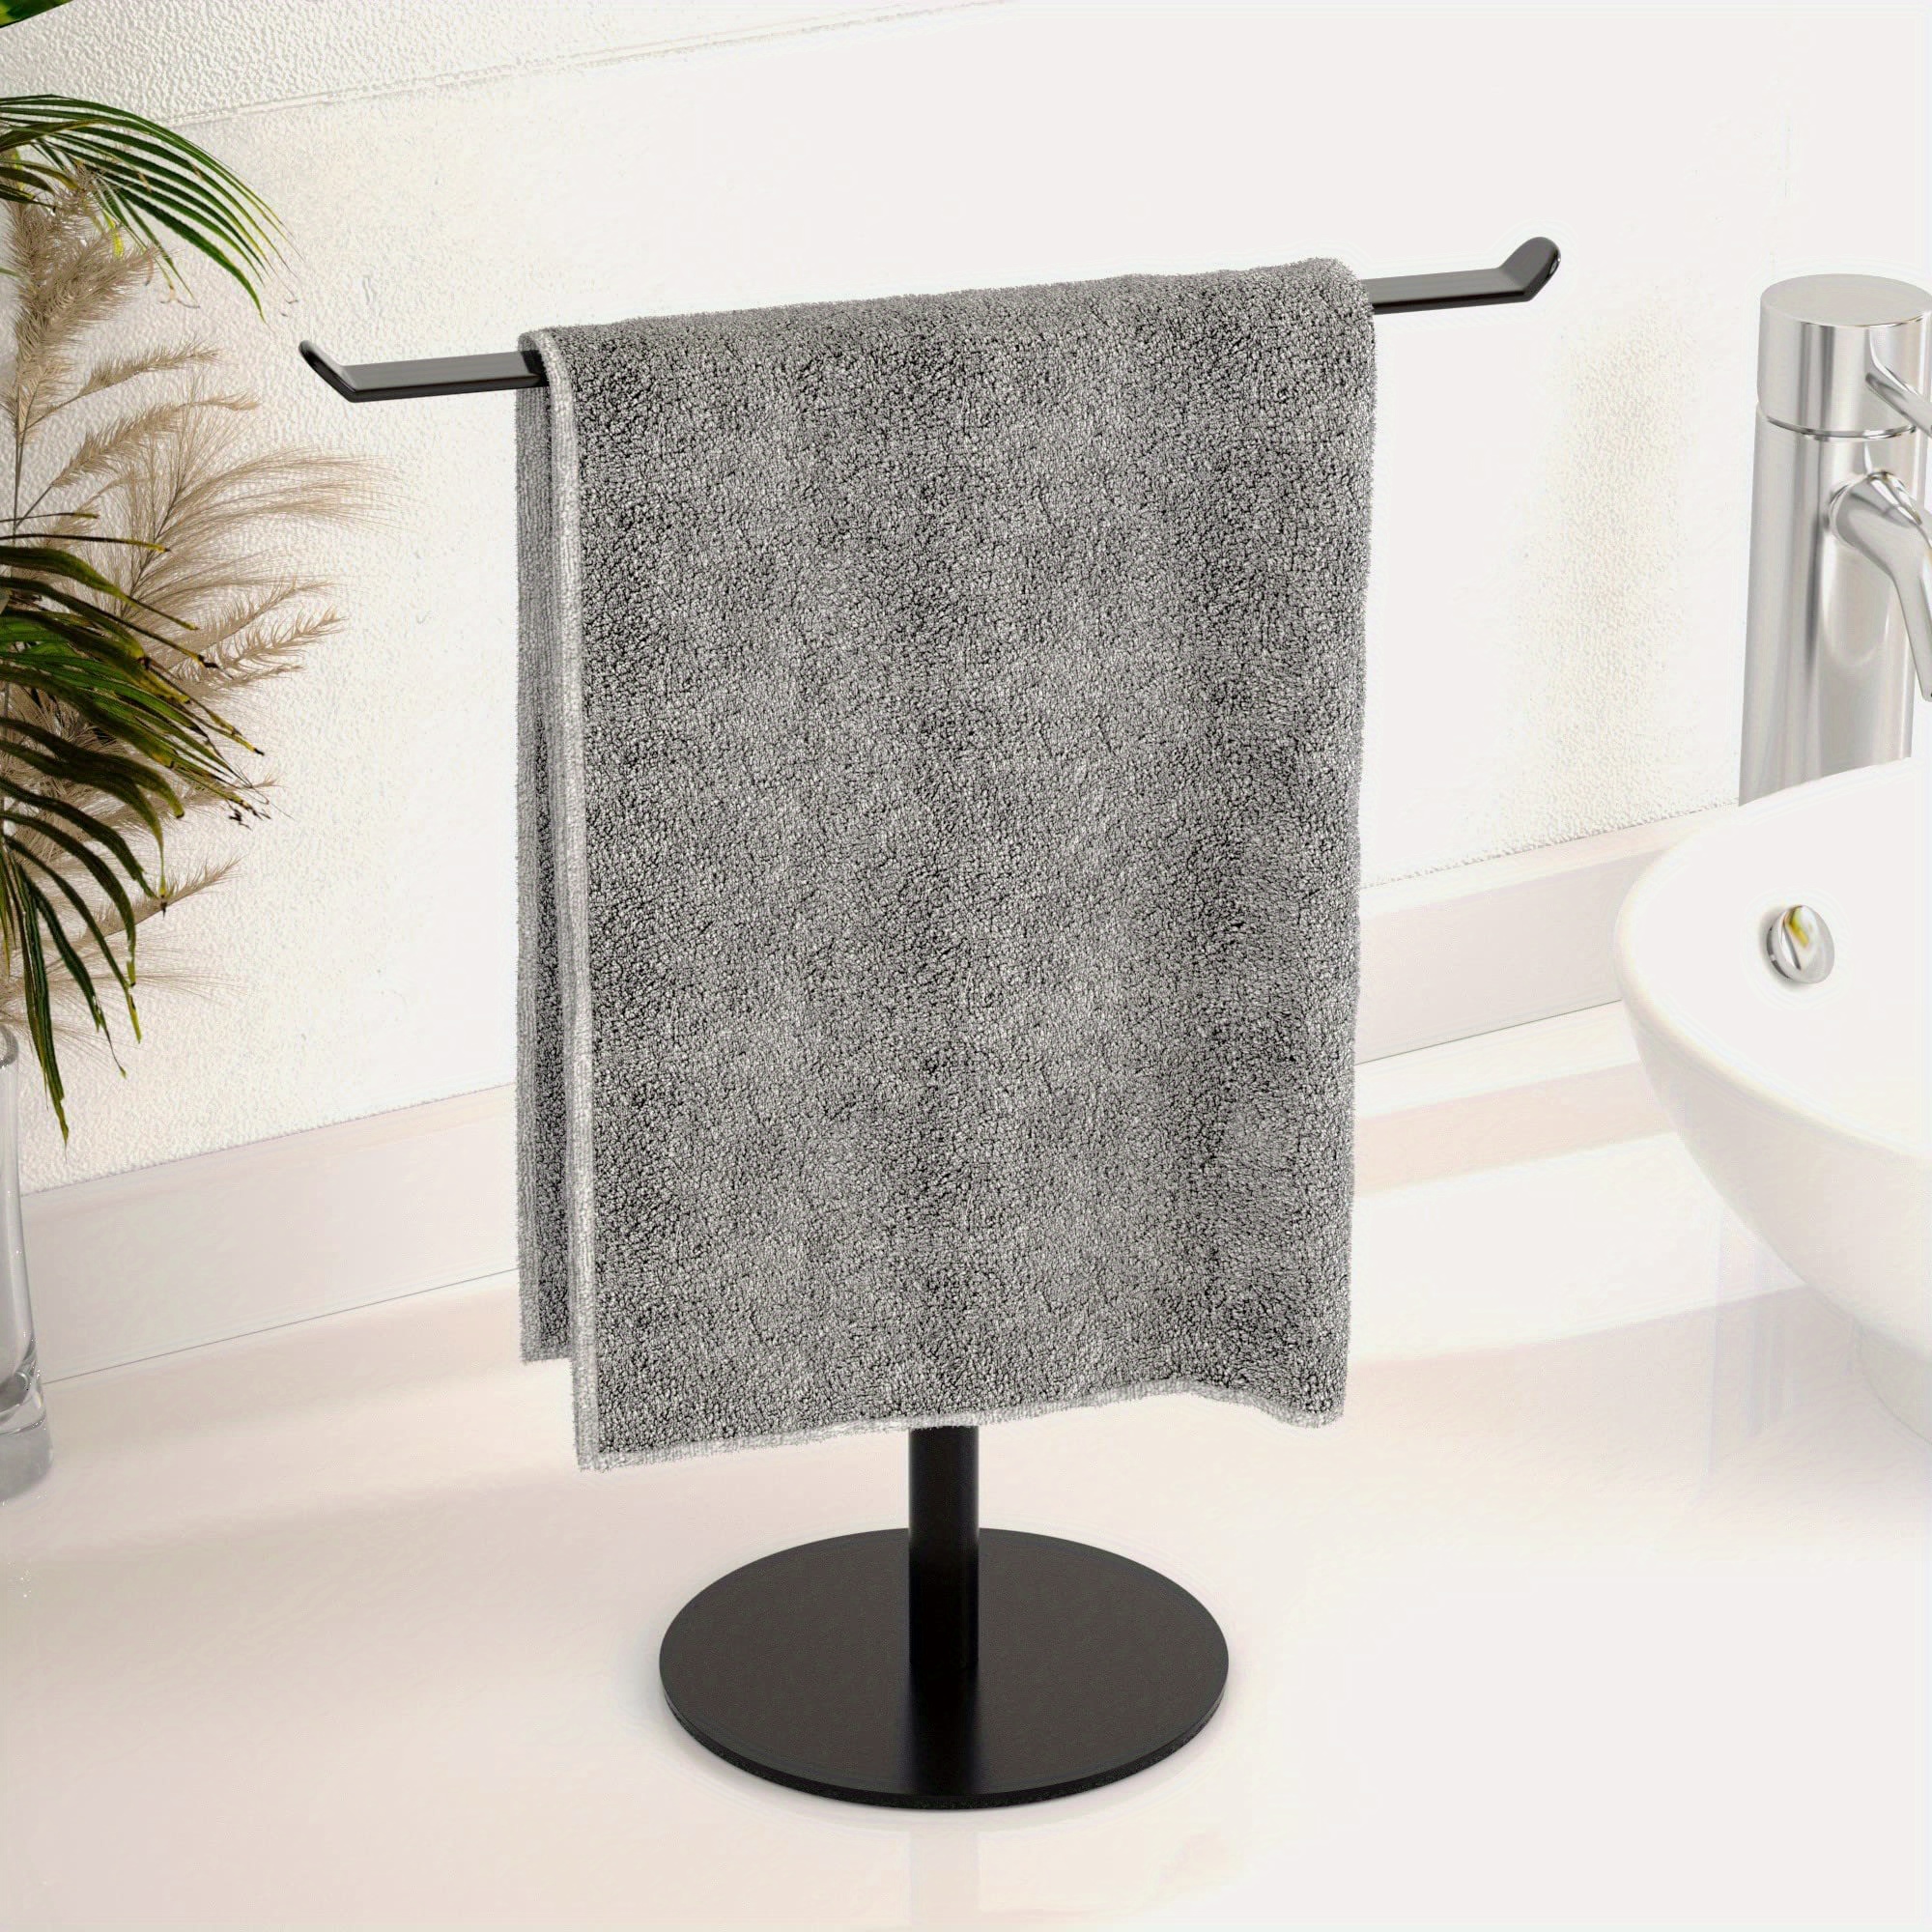  Toallero negro para baño, soporte de toalla de mano de